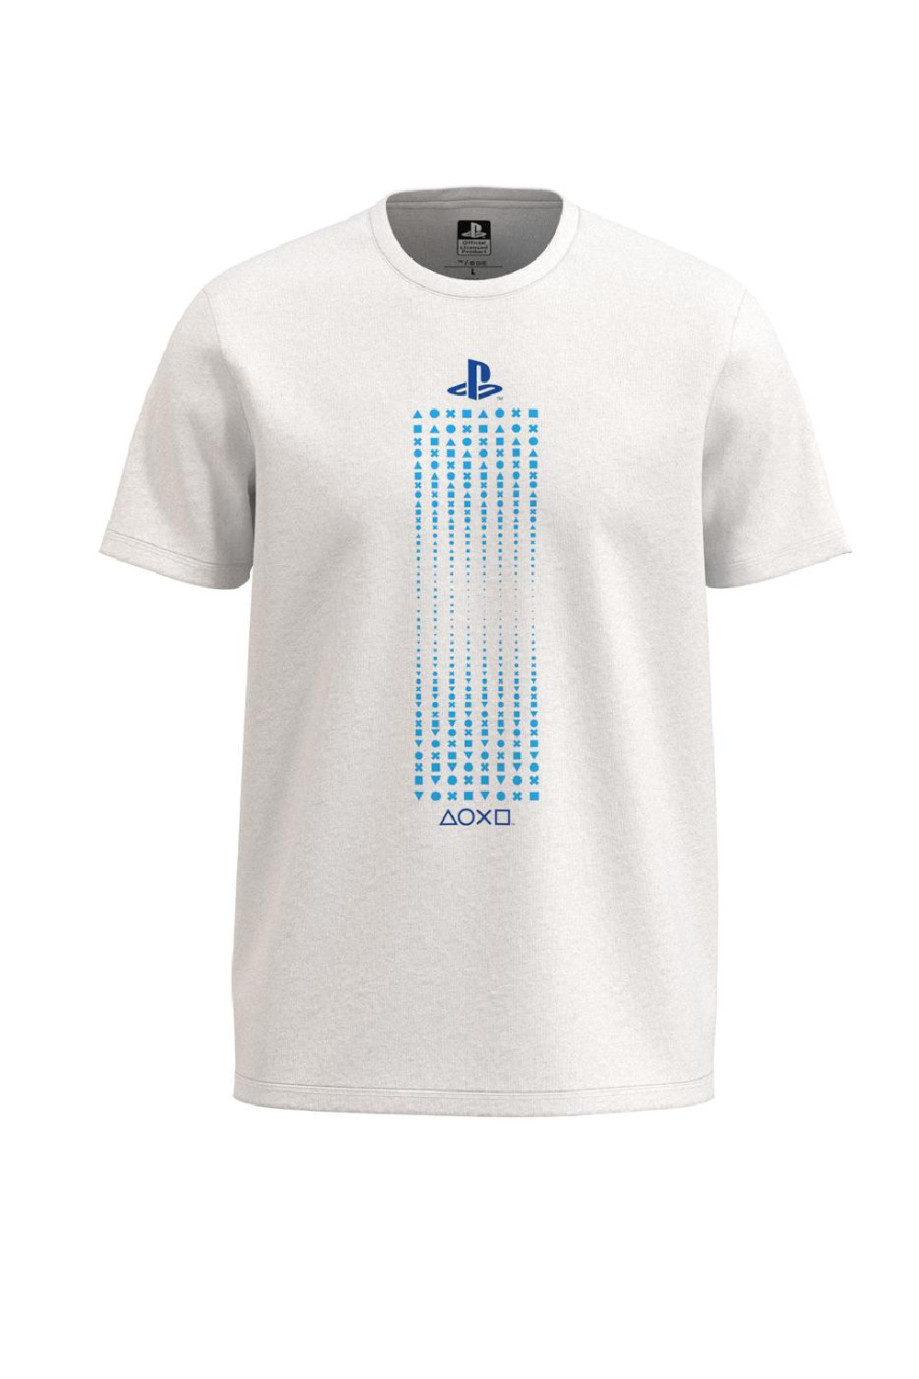 Camiseta unicolor en algodón con manga corta y diseño azul de PlayStation